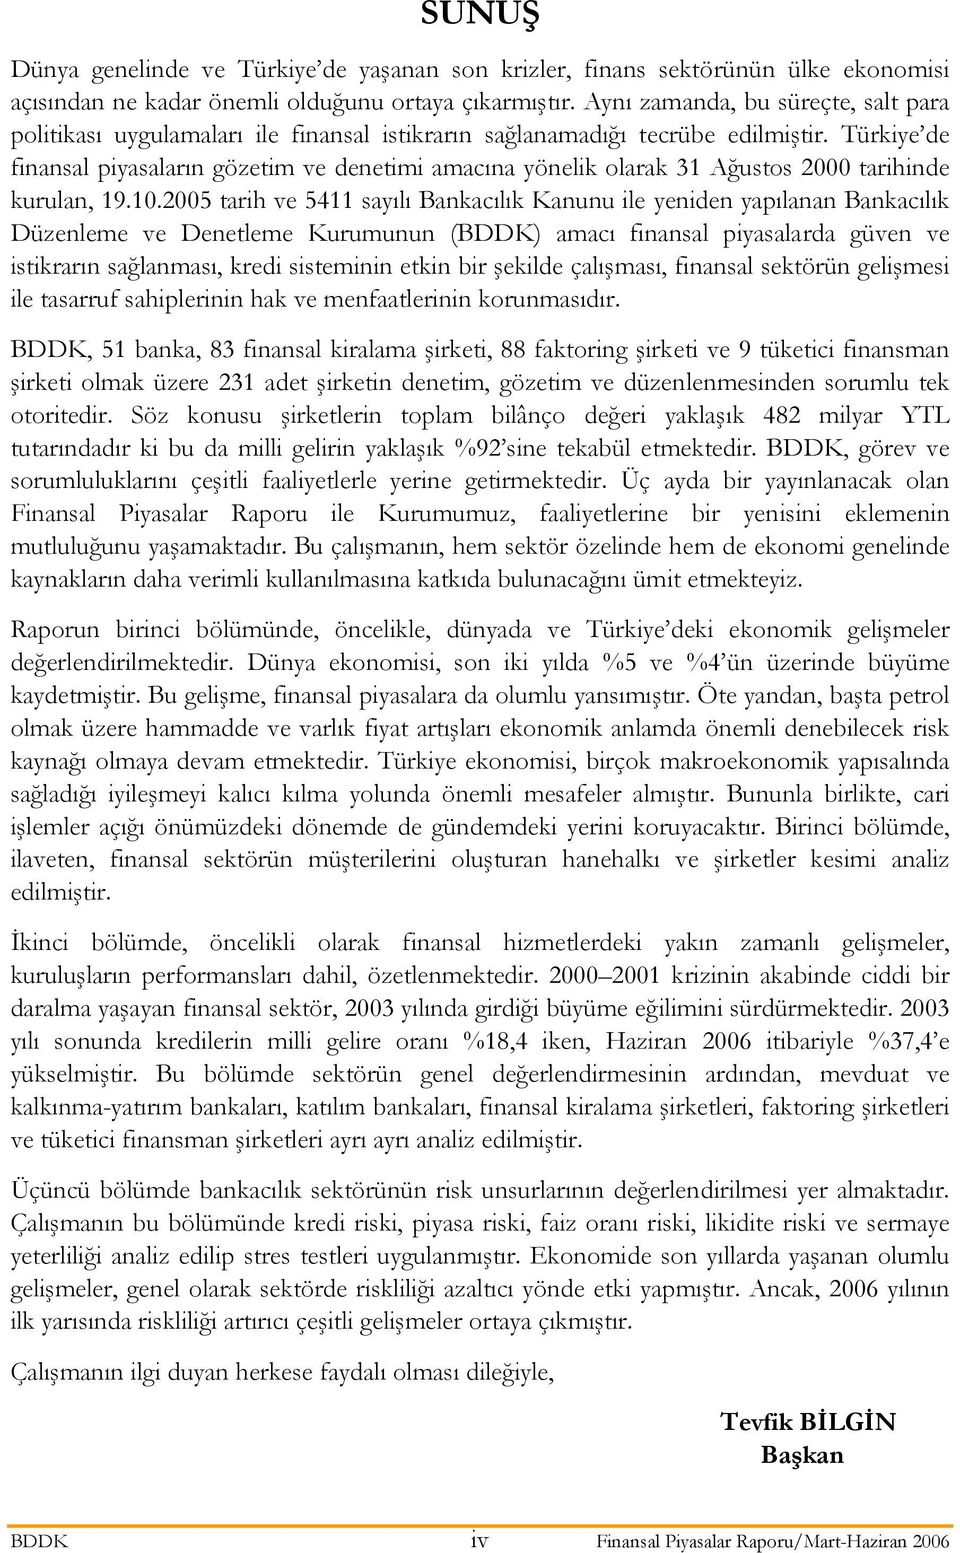 Türkiye de finansal piyasaların gözetim ve denetimi amacına yönelik olarak 31 Ağustos 2000 tarihinde kurulan, 19.10.